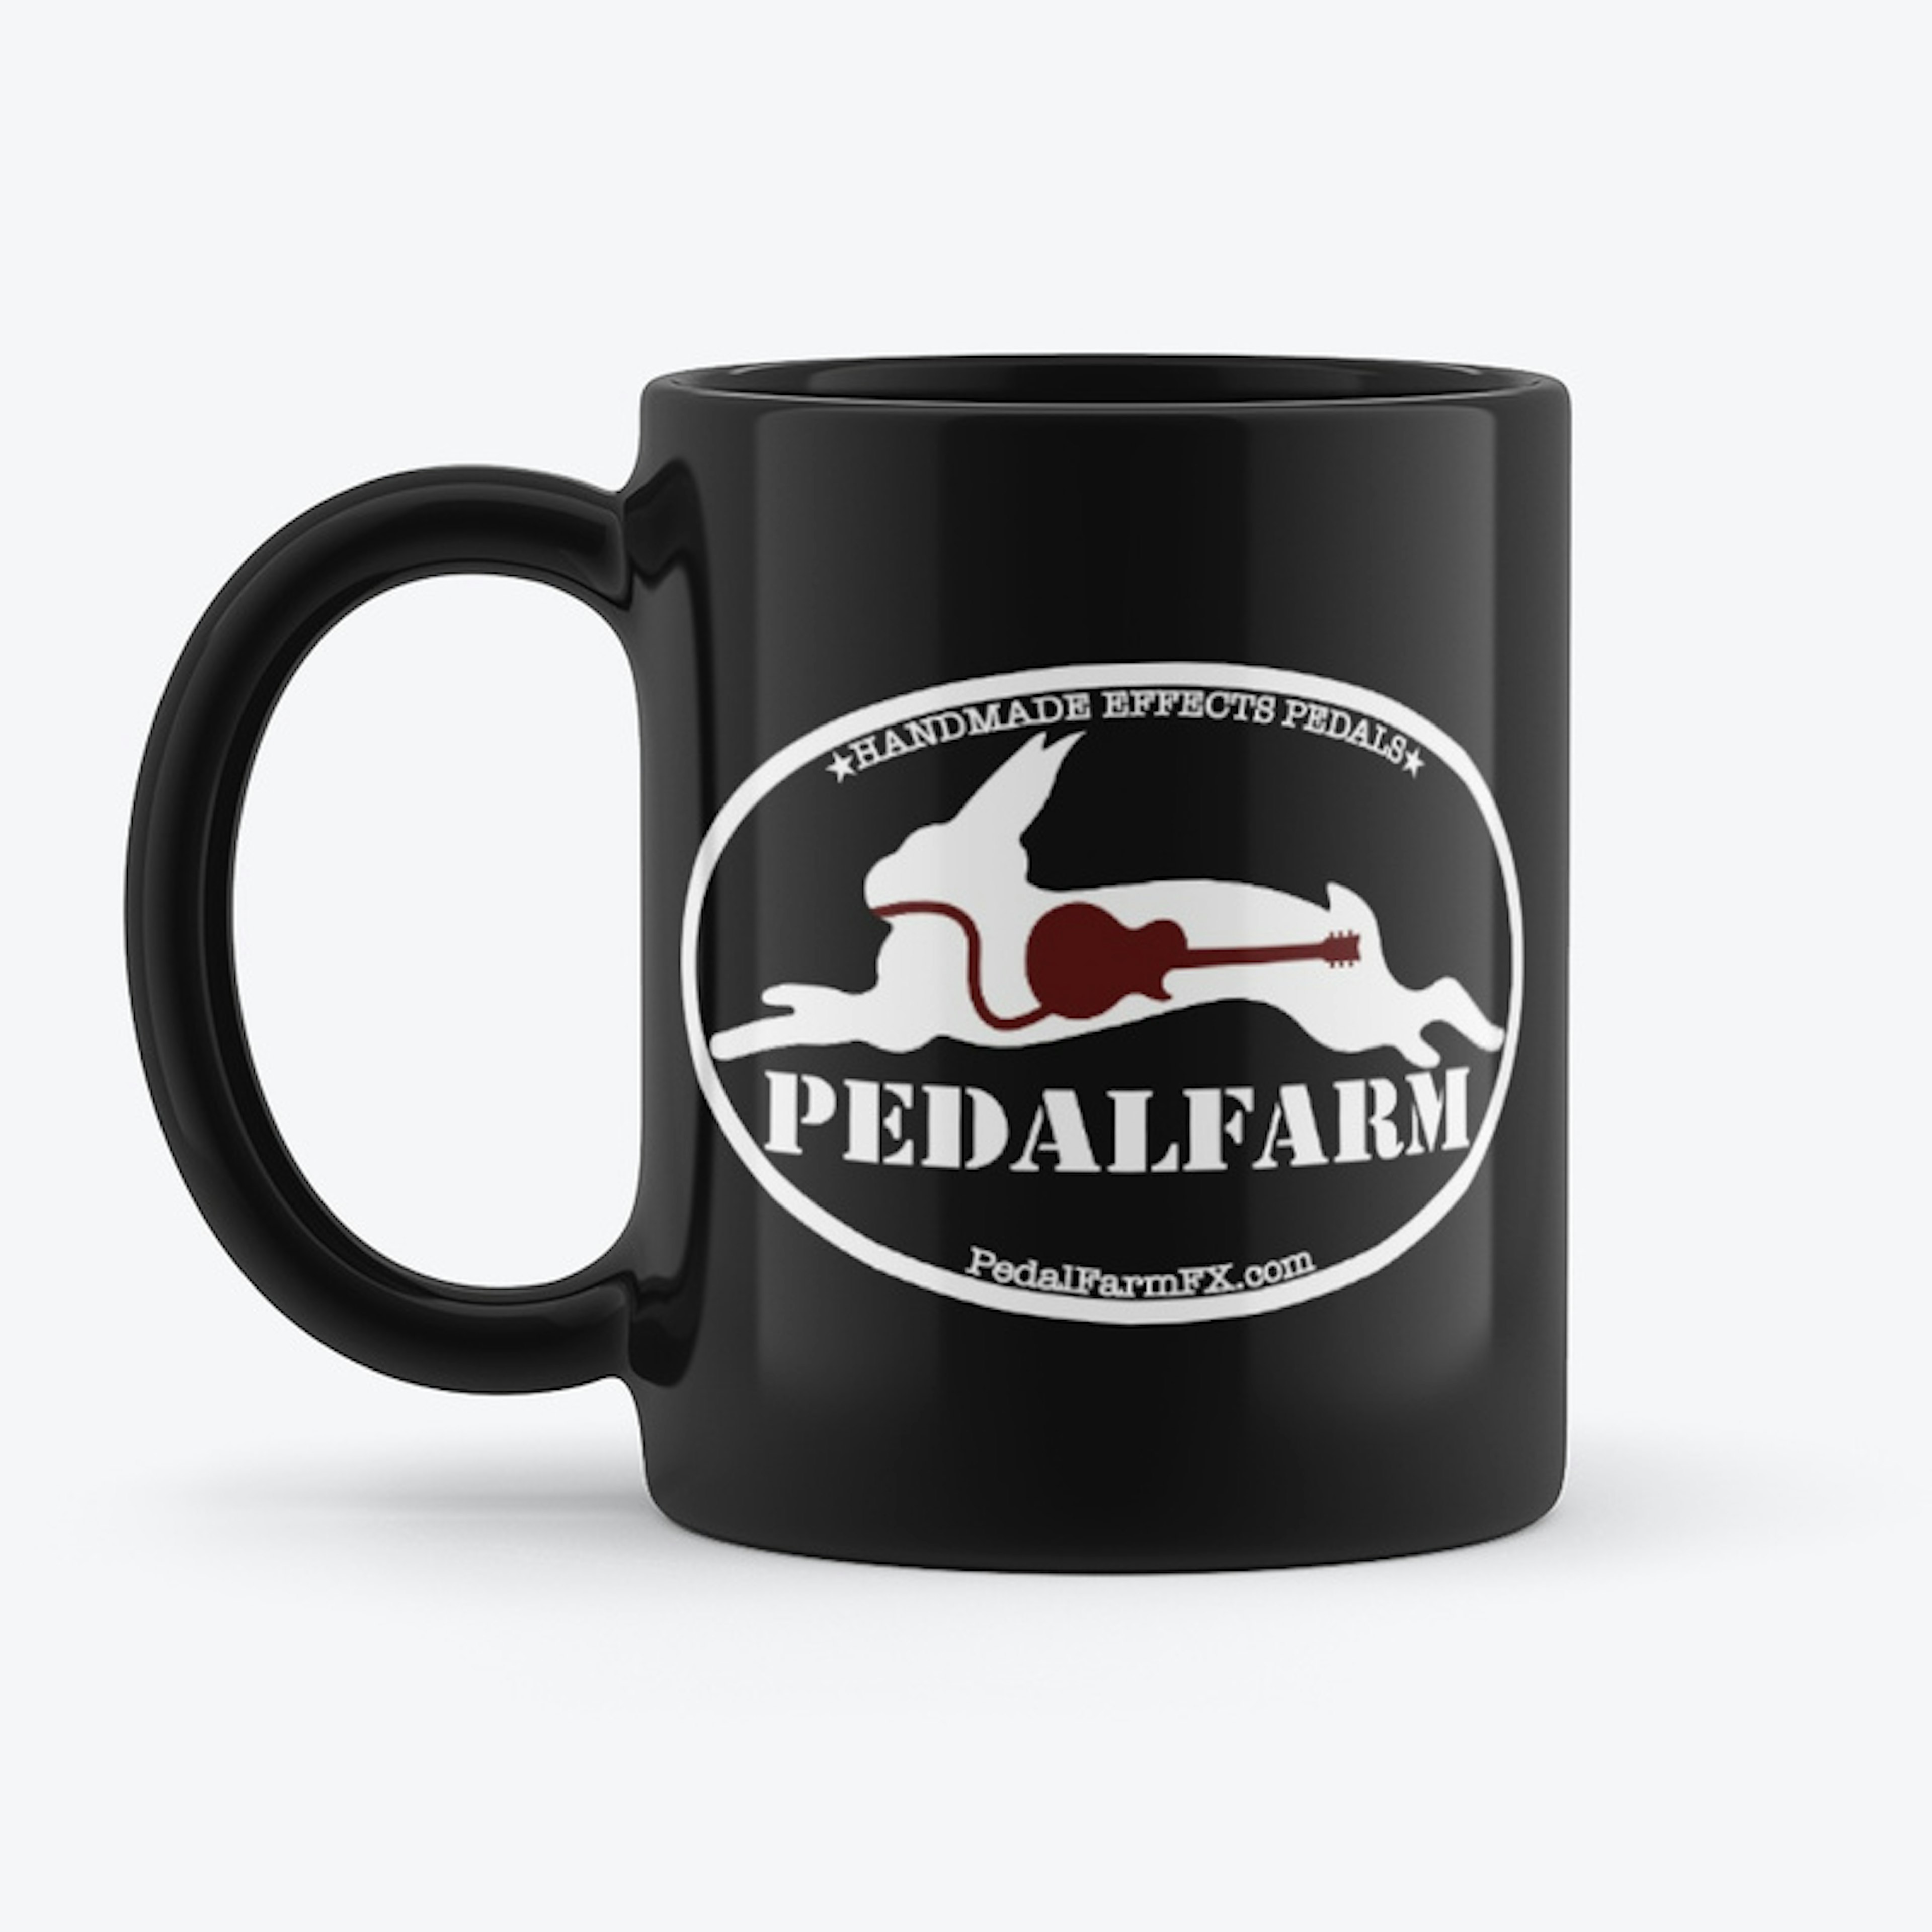 PedalFarm Mug, Black